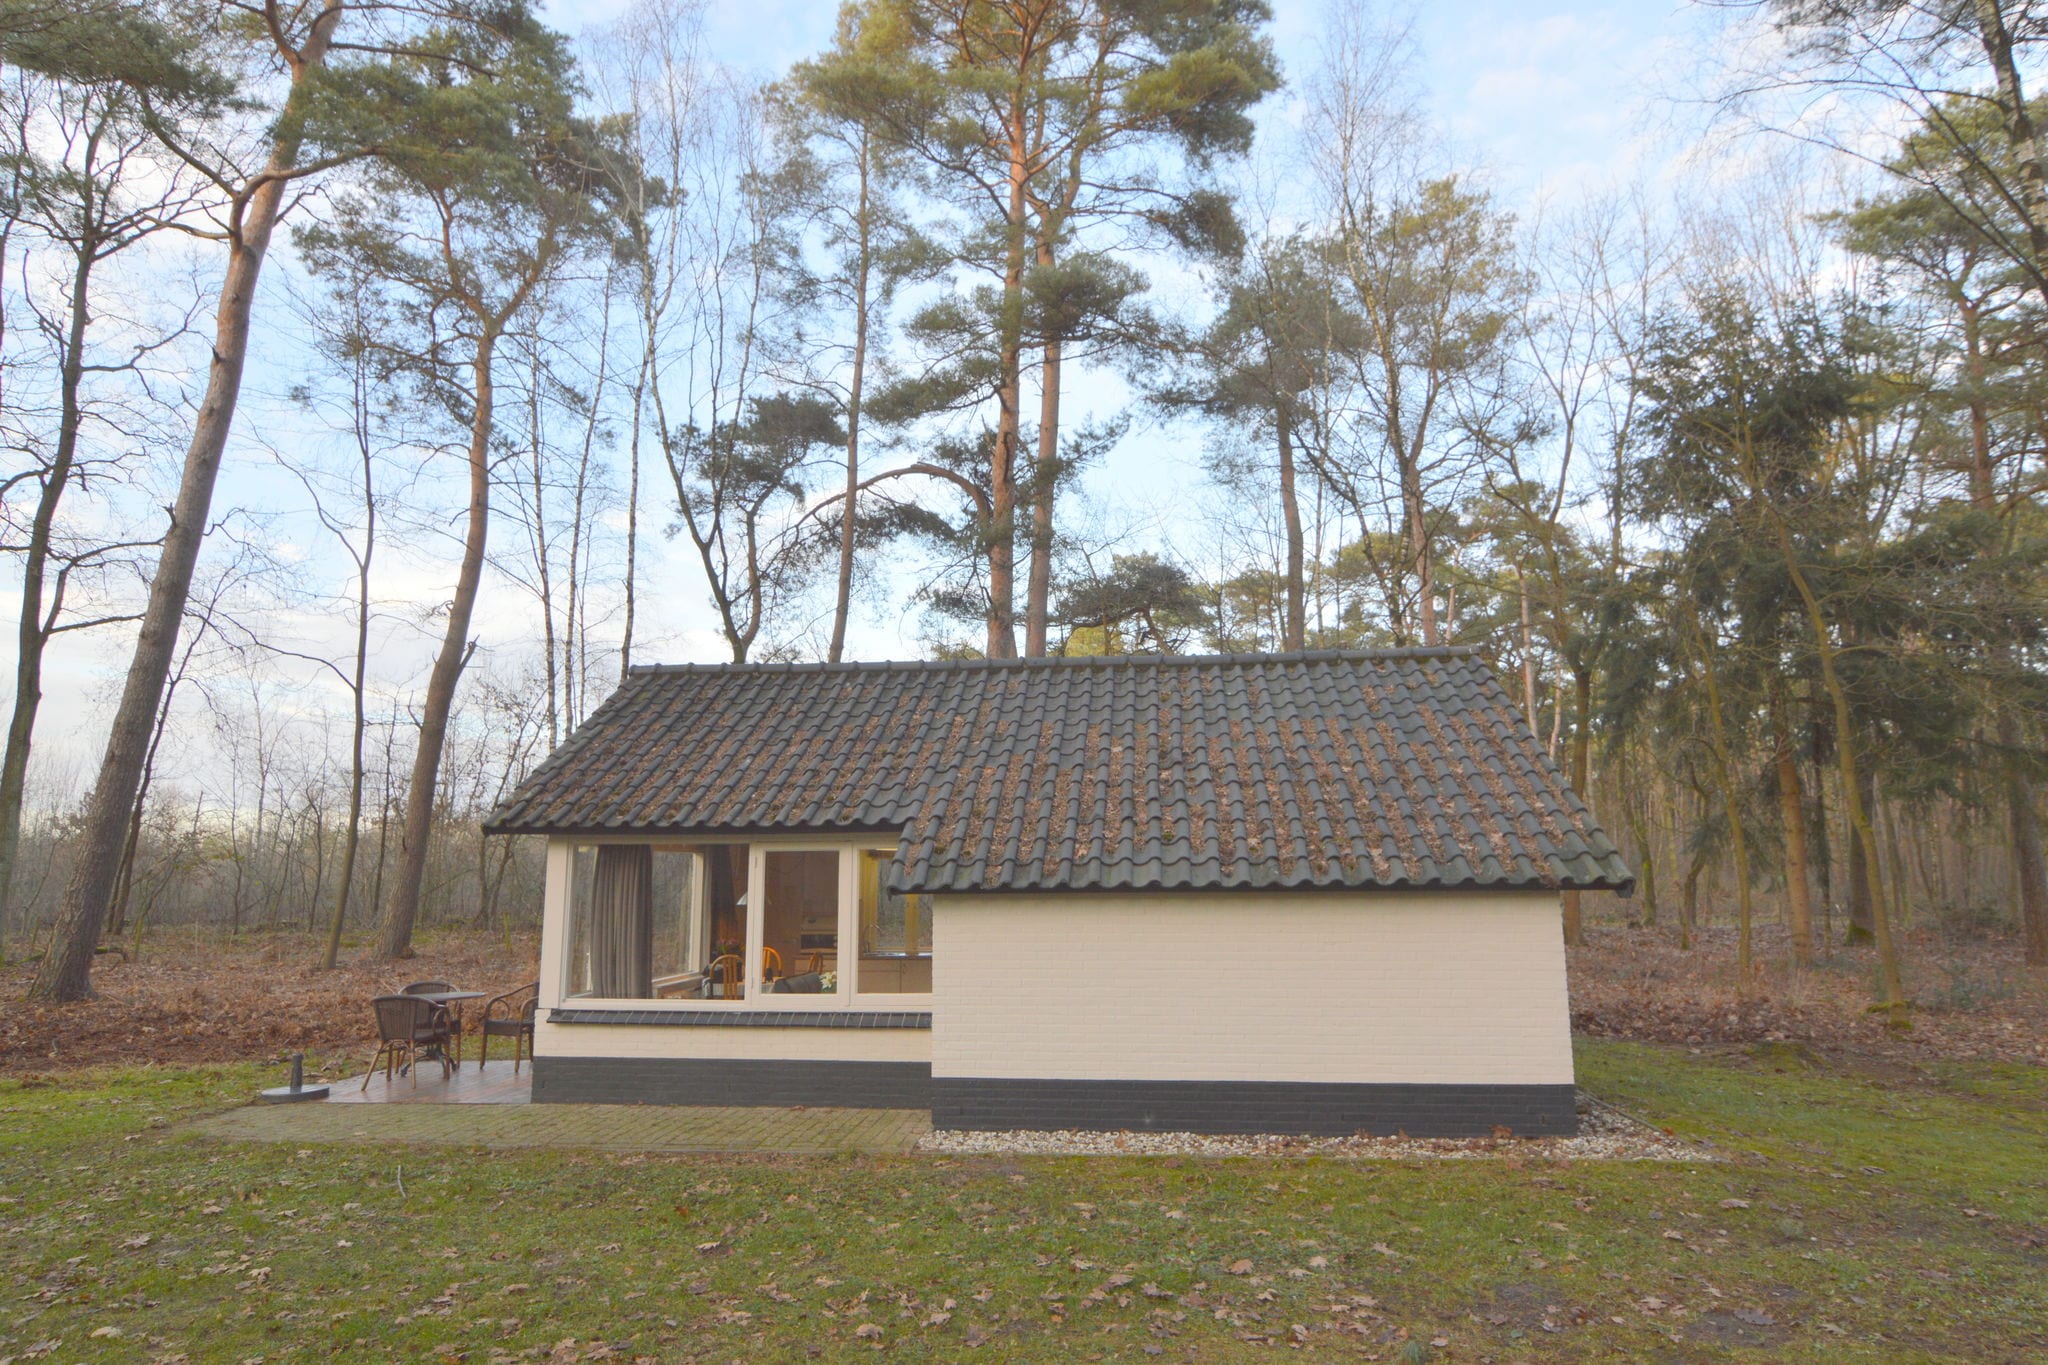 Geheel vrijstaande bungalow op een natuurrijkpark aan een groot ven